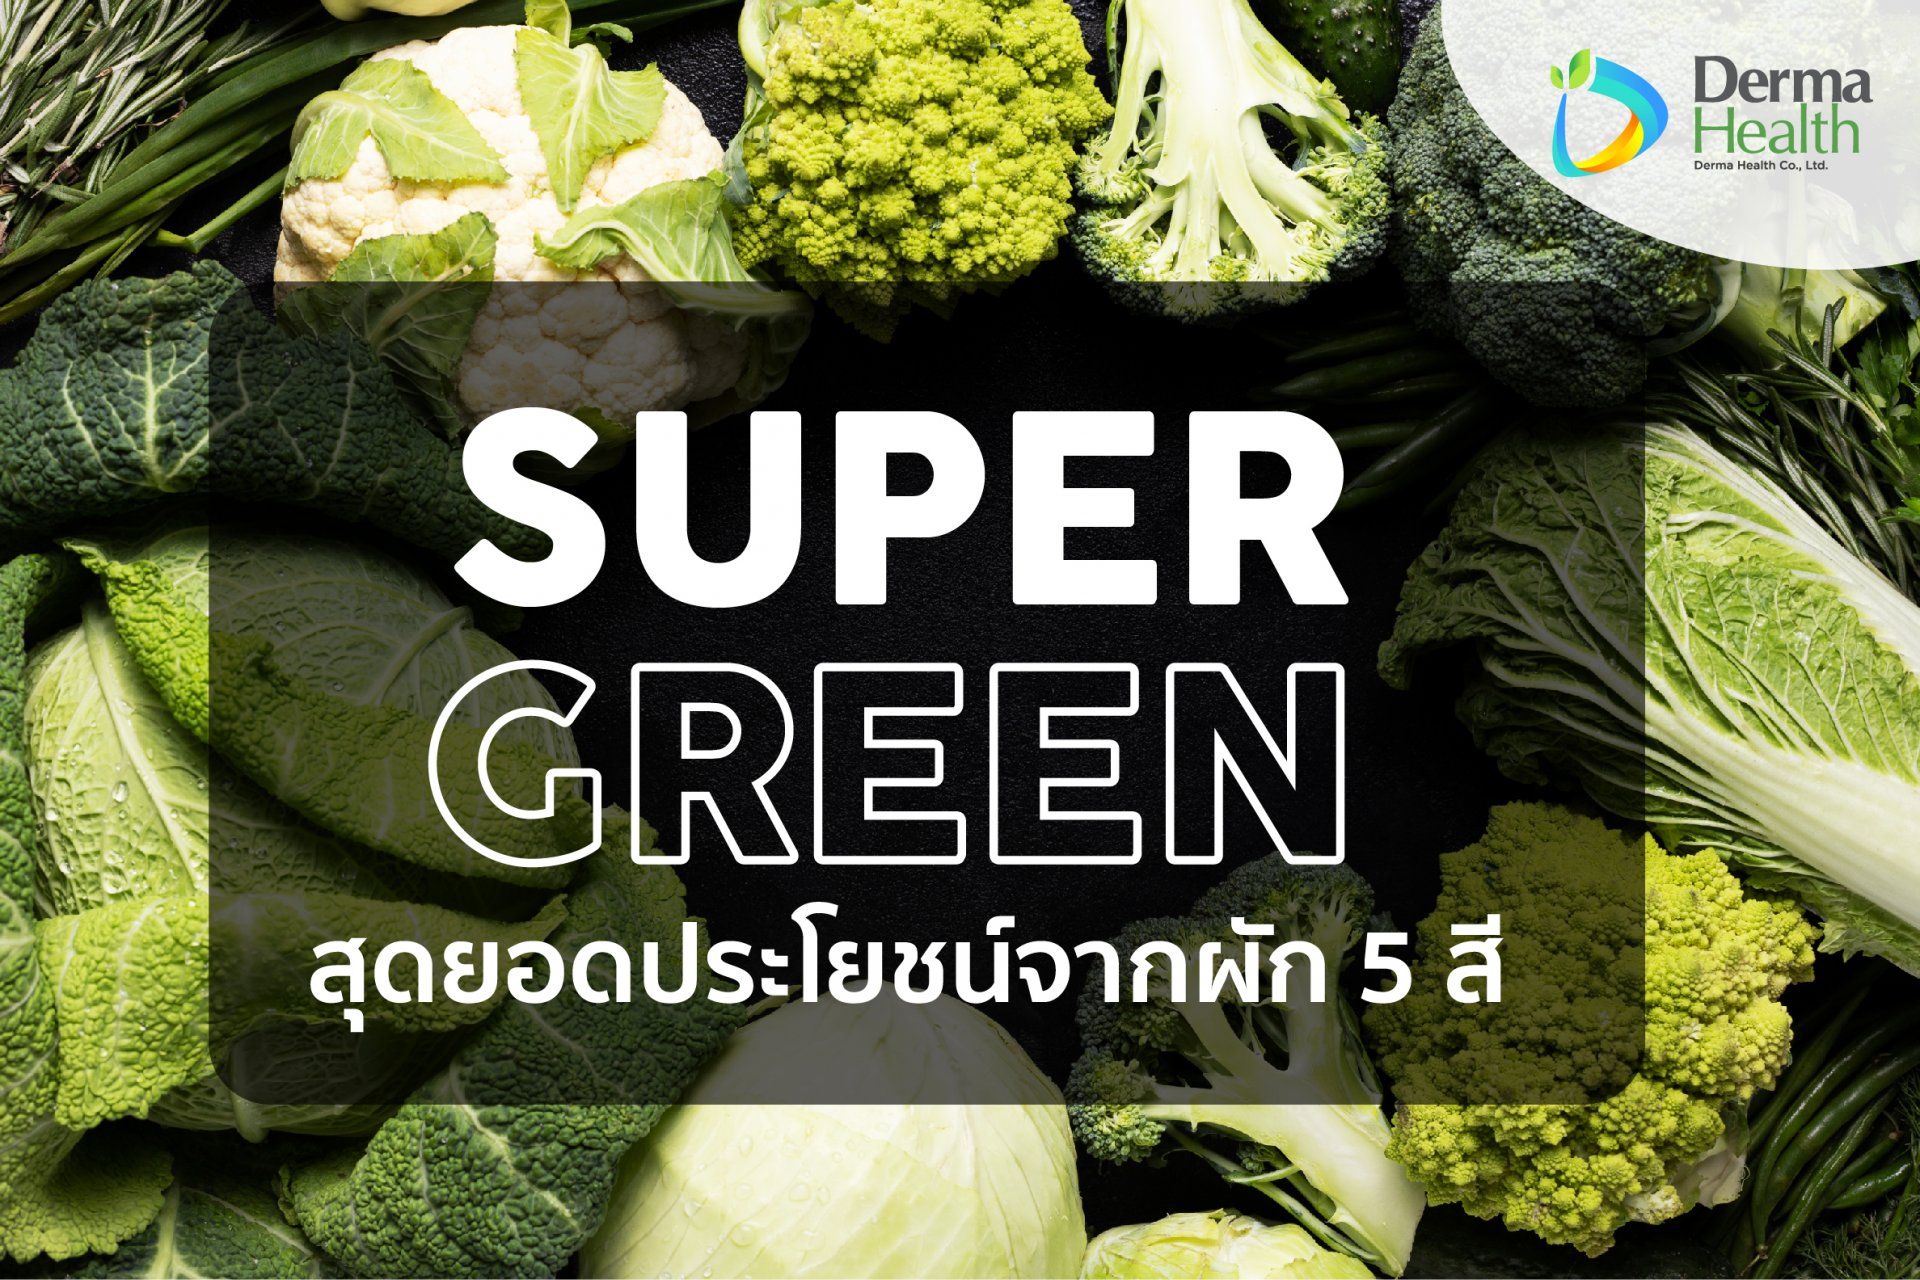 Supergreen สุดยอดประโยชน์จากผัก 5 สี